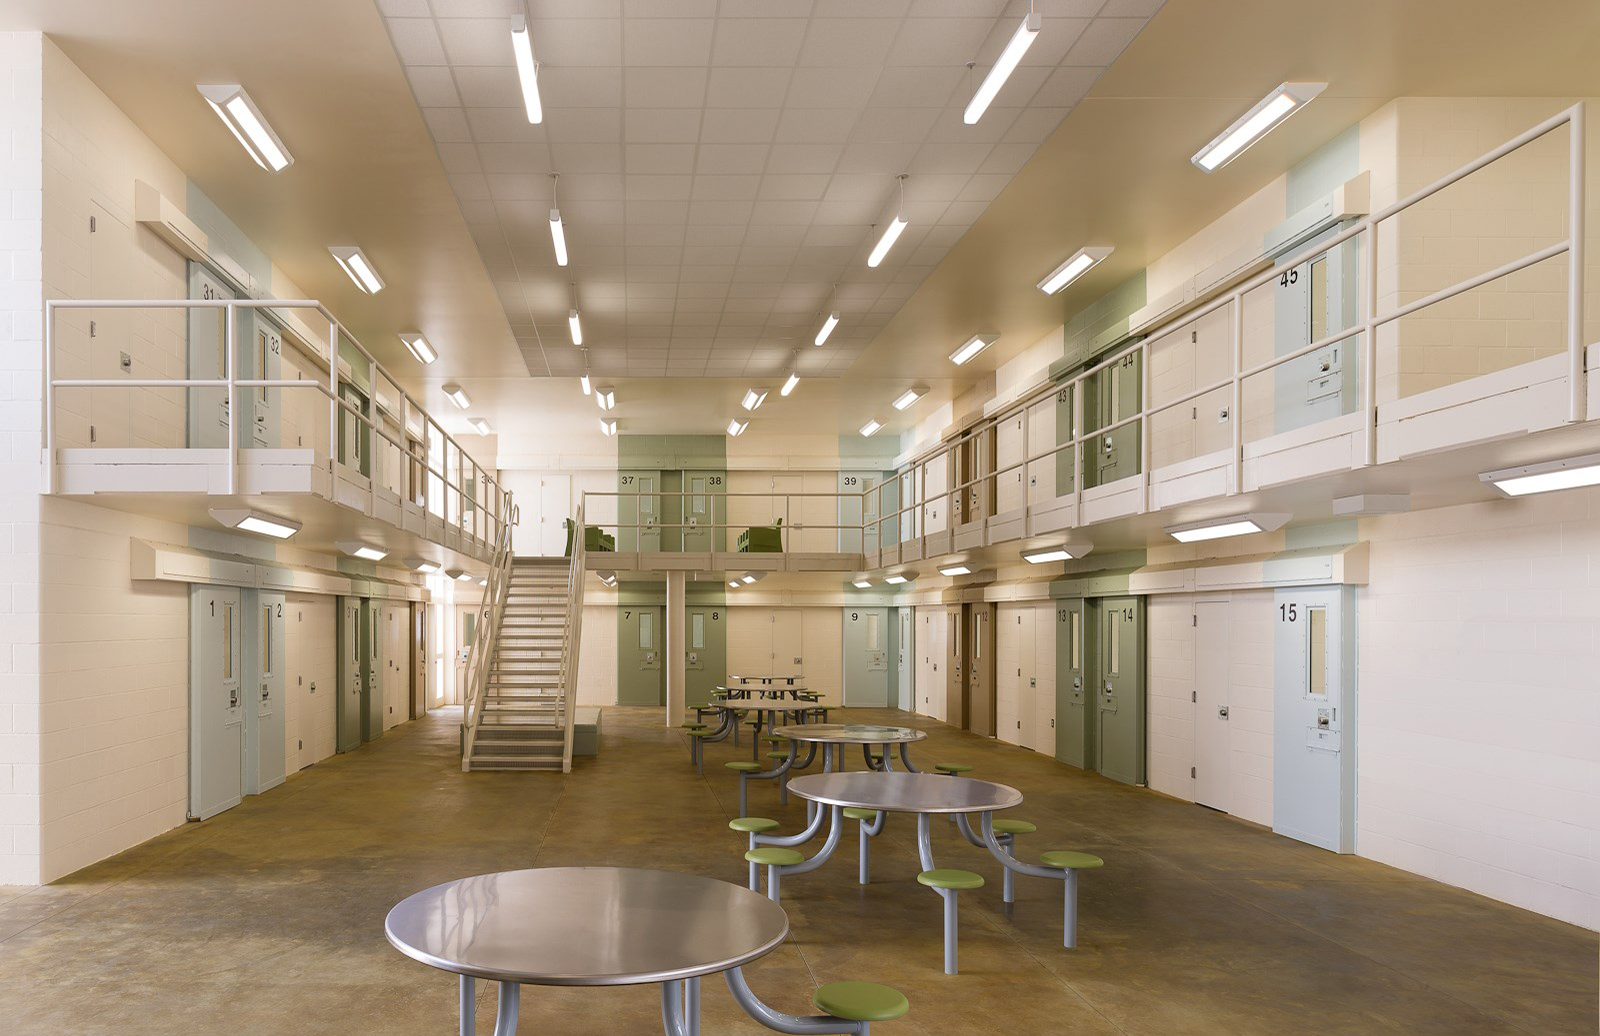 San Diego prison